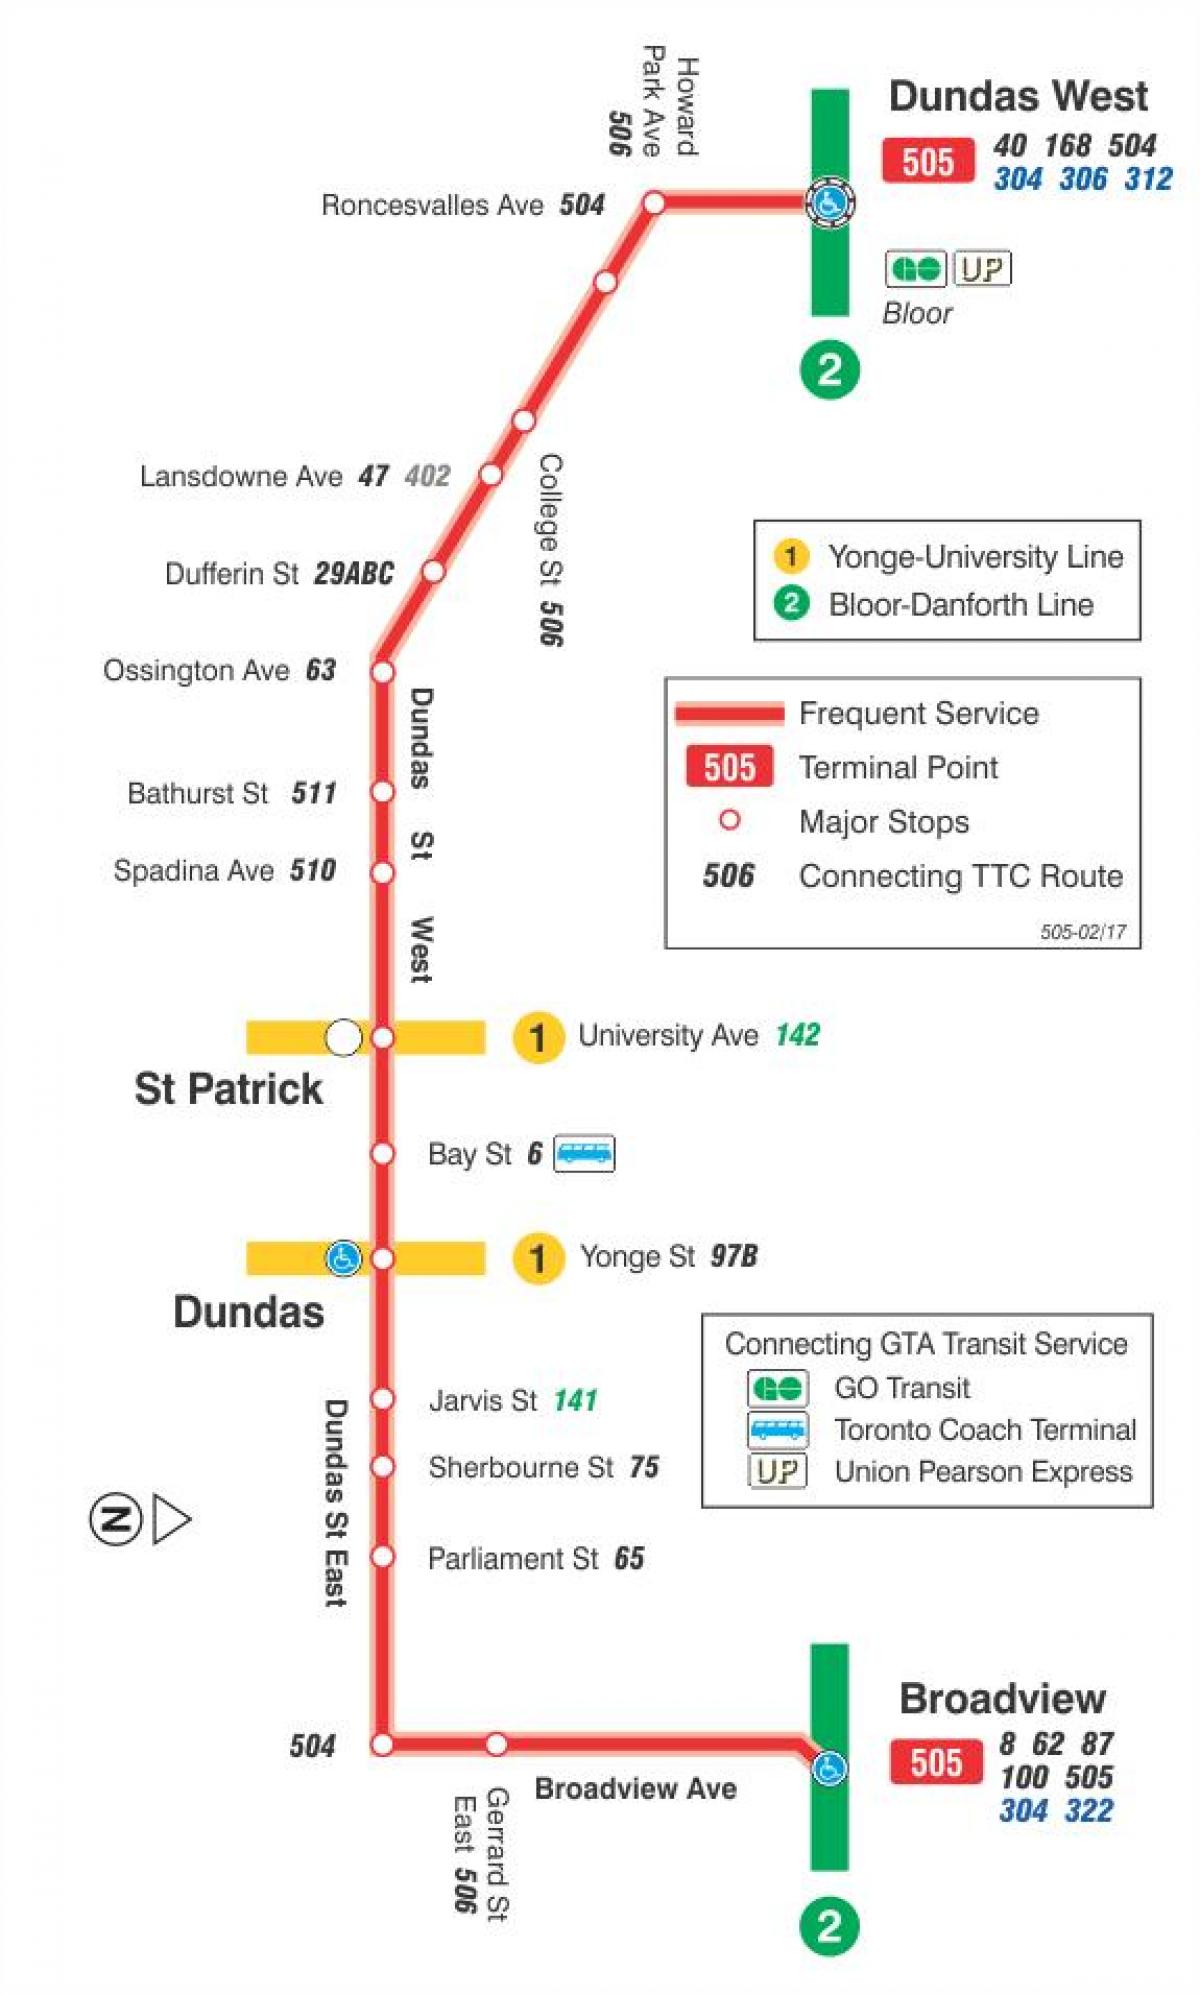 Anzeigen der Straßenbahn-Linie 505 Dundas